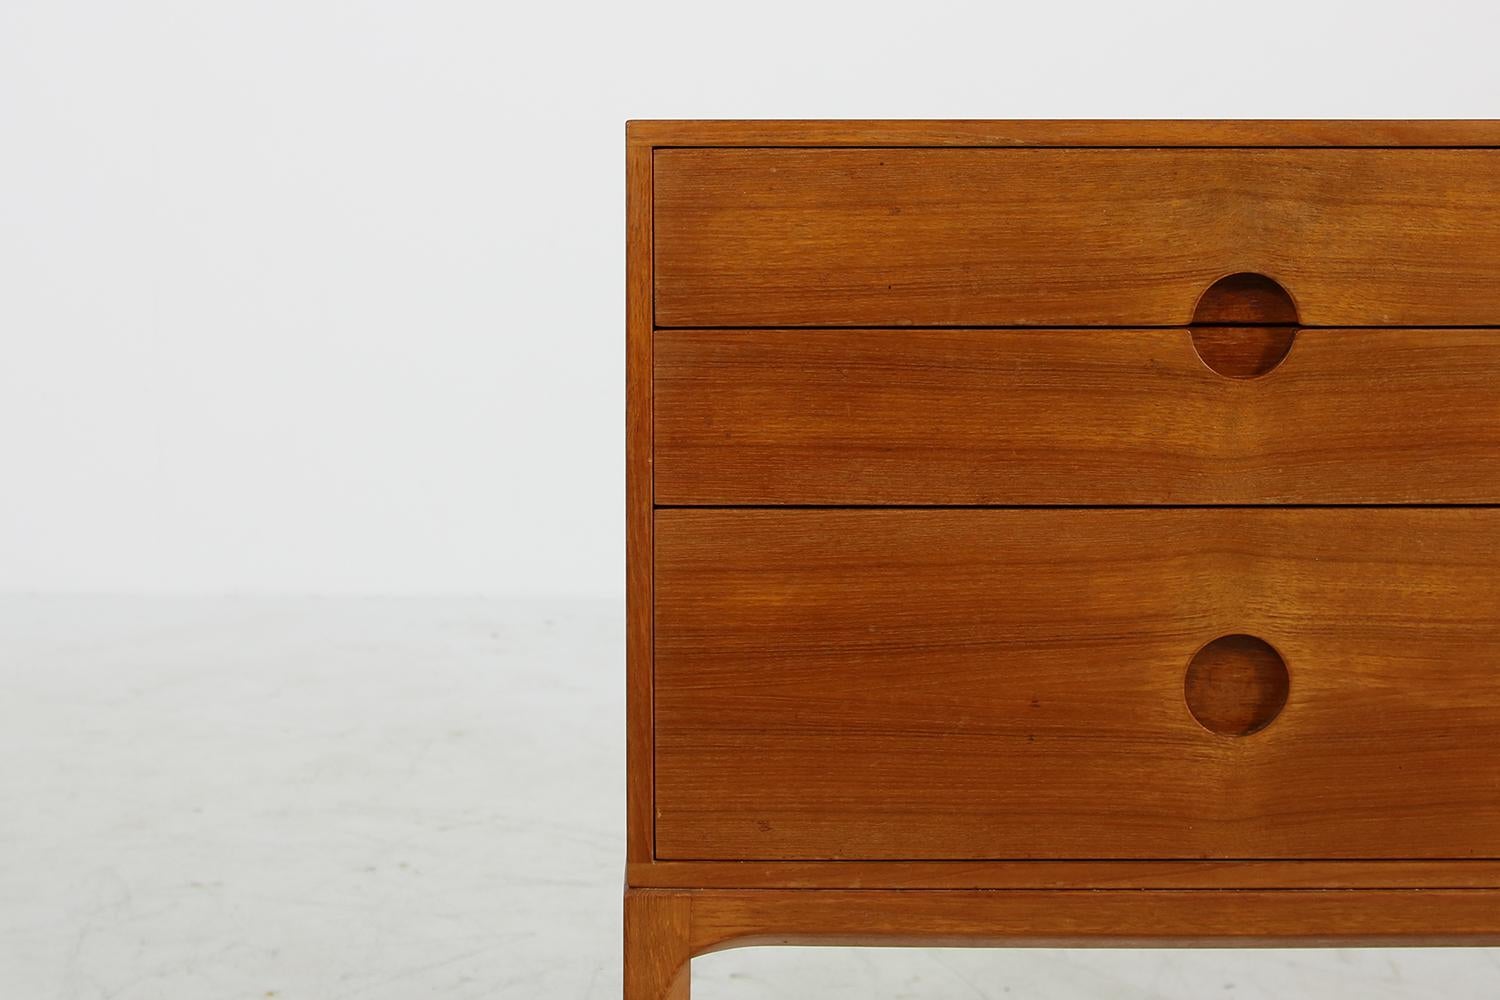 Schöne Kommode von Aksel Kjersgaard aus den 1960er Jahren, fantastischer Vintage-Zustand, authentisches und schönes Vintage-Objekt, seltenes Stück. Schubladen funktionieren gut, innen sauber.